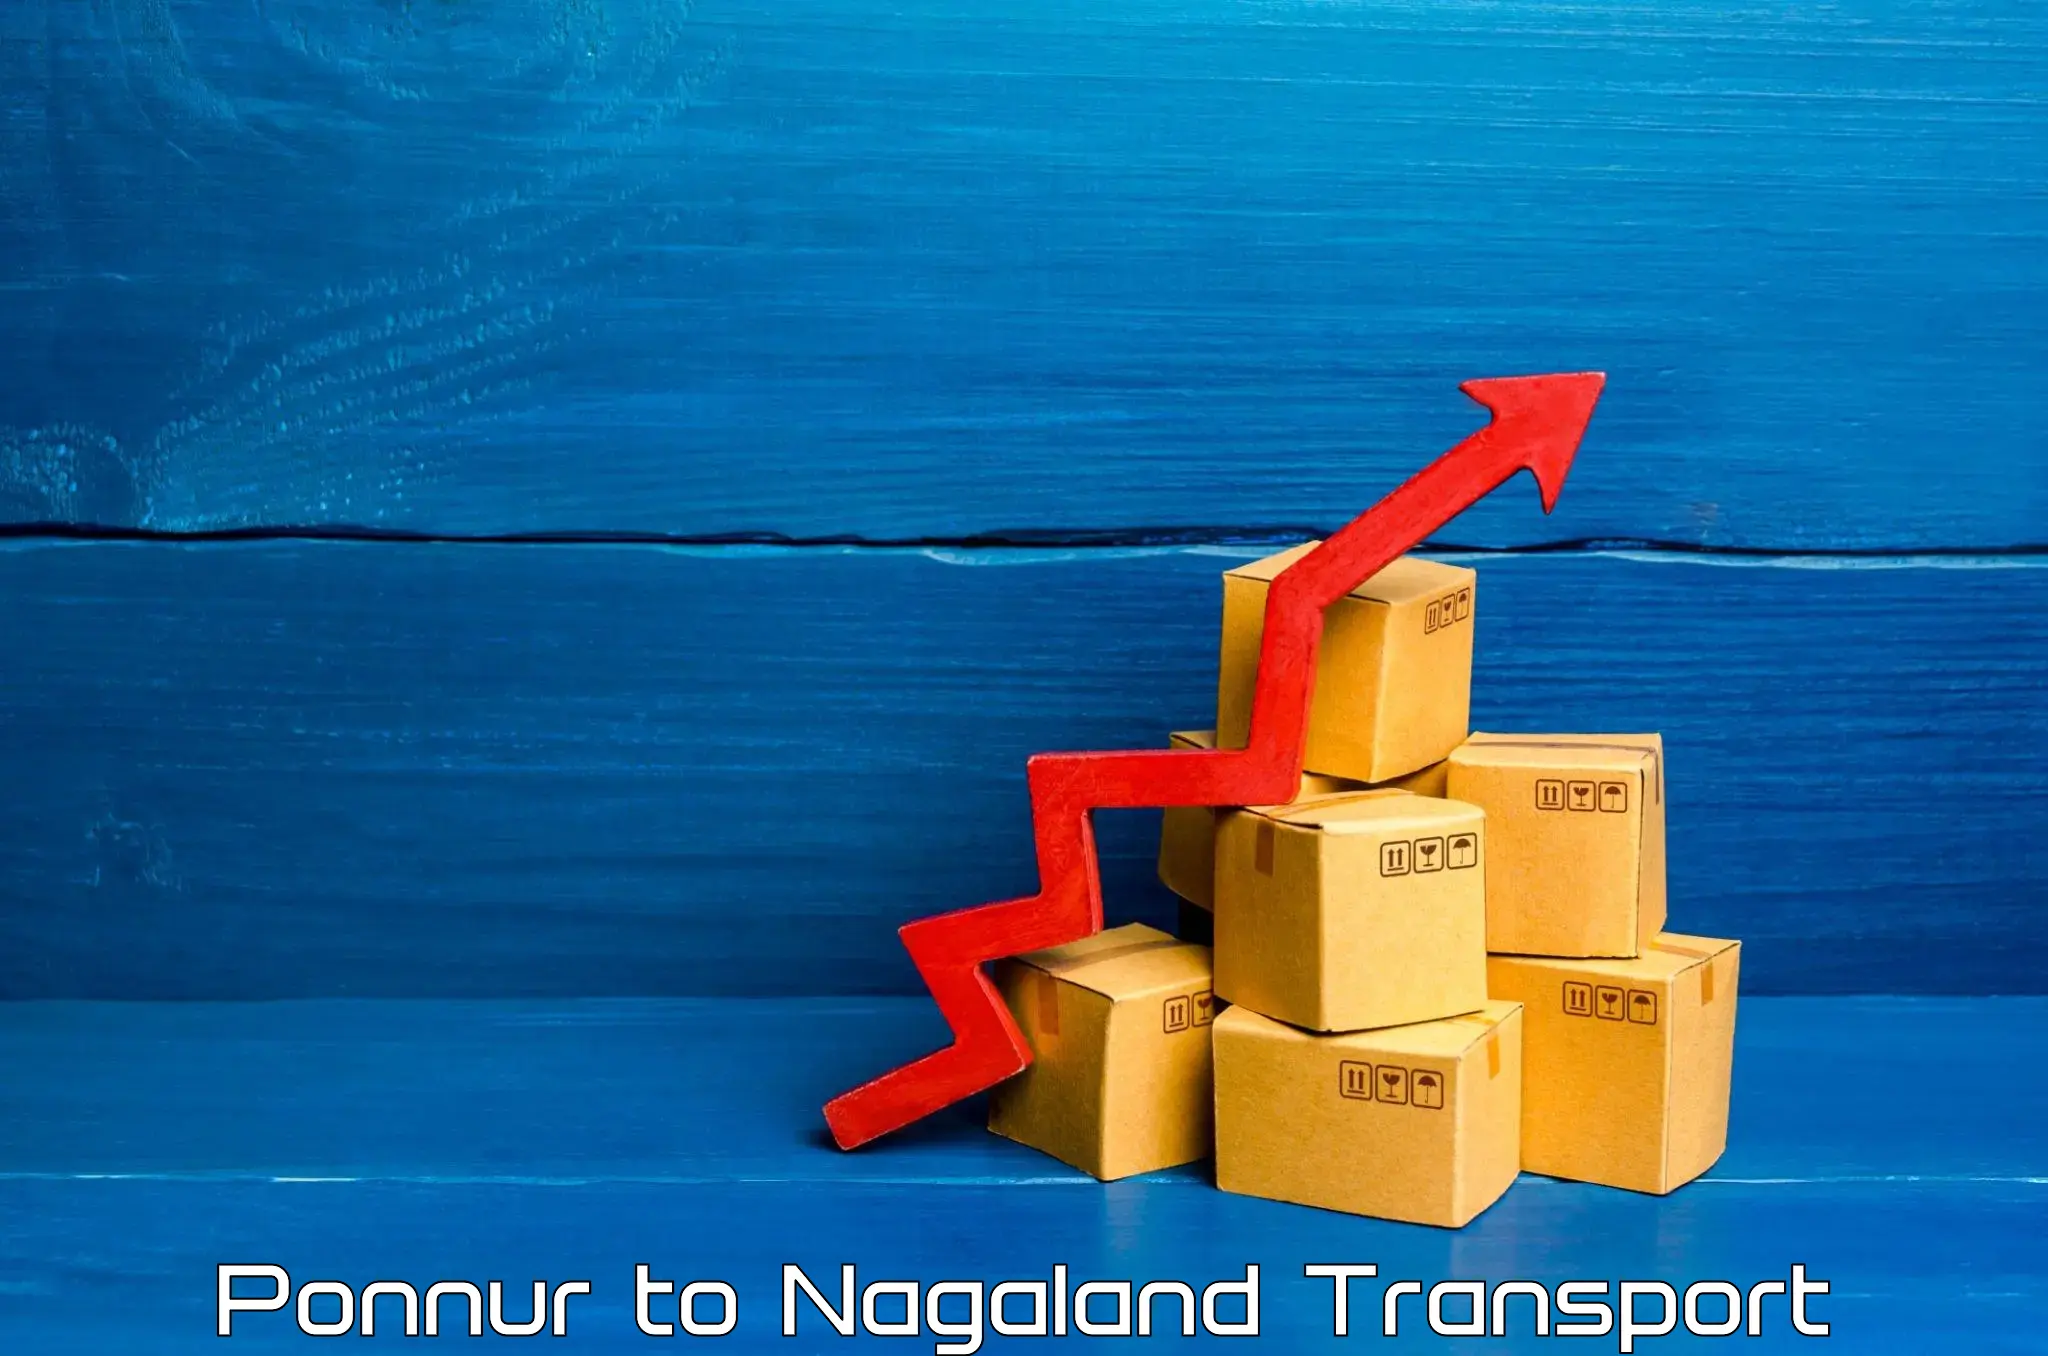 Cargo transportation services Ponnur to Tuensang